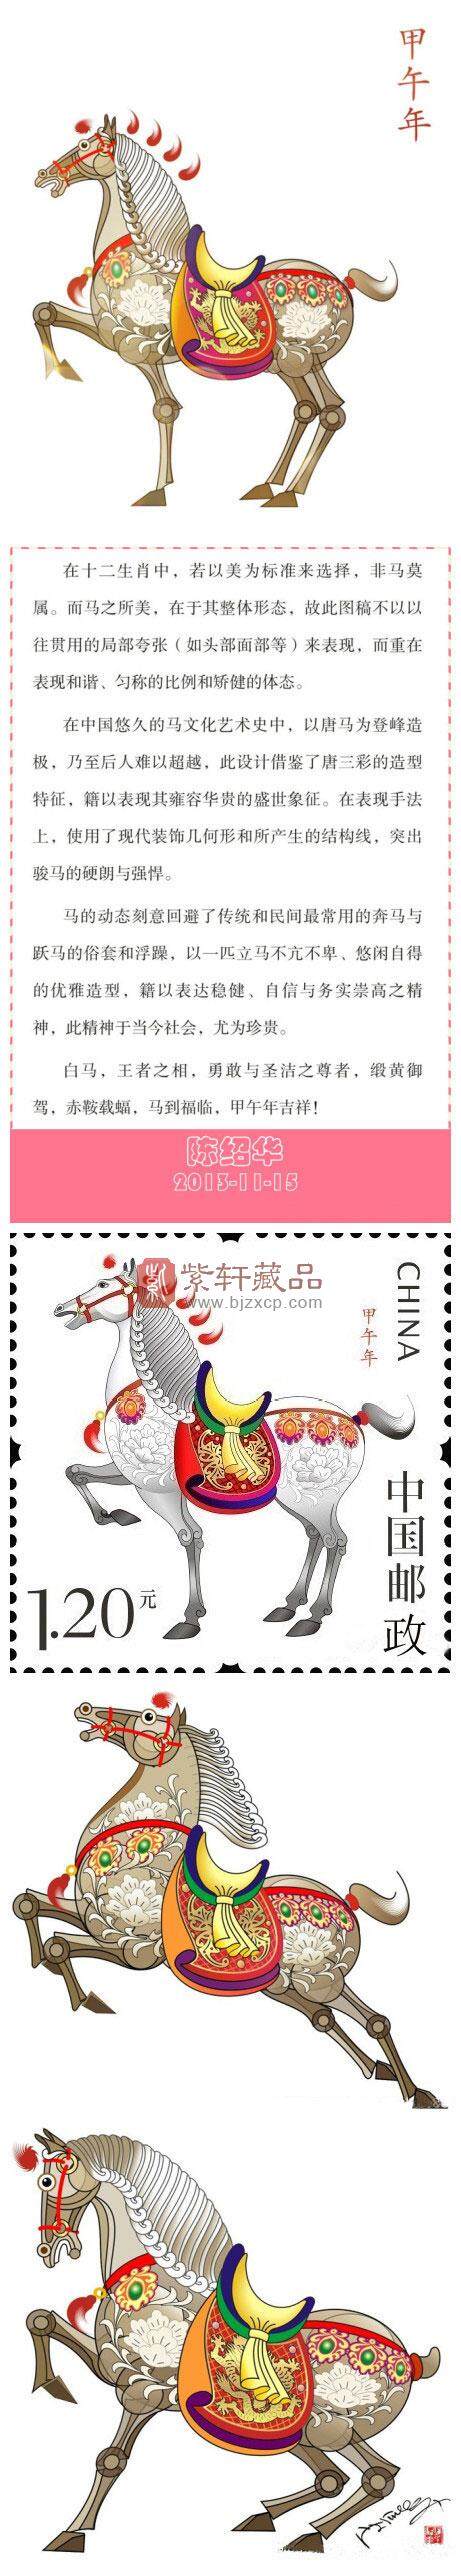 明年1月5日发行《甲午年》(马)特种邮票